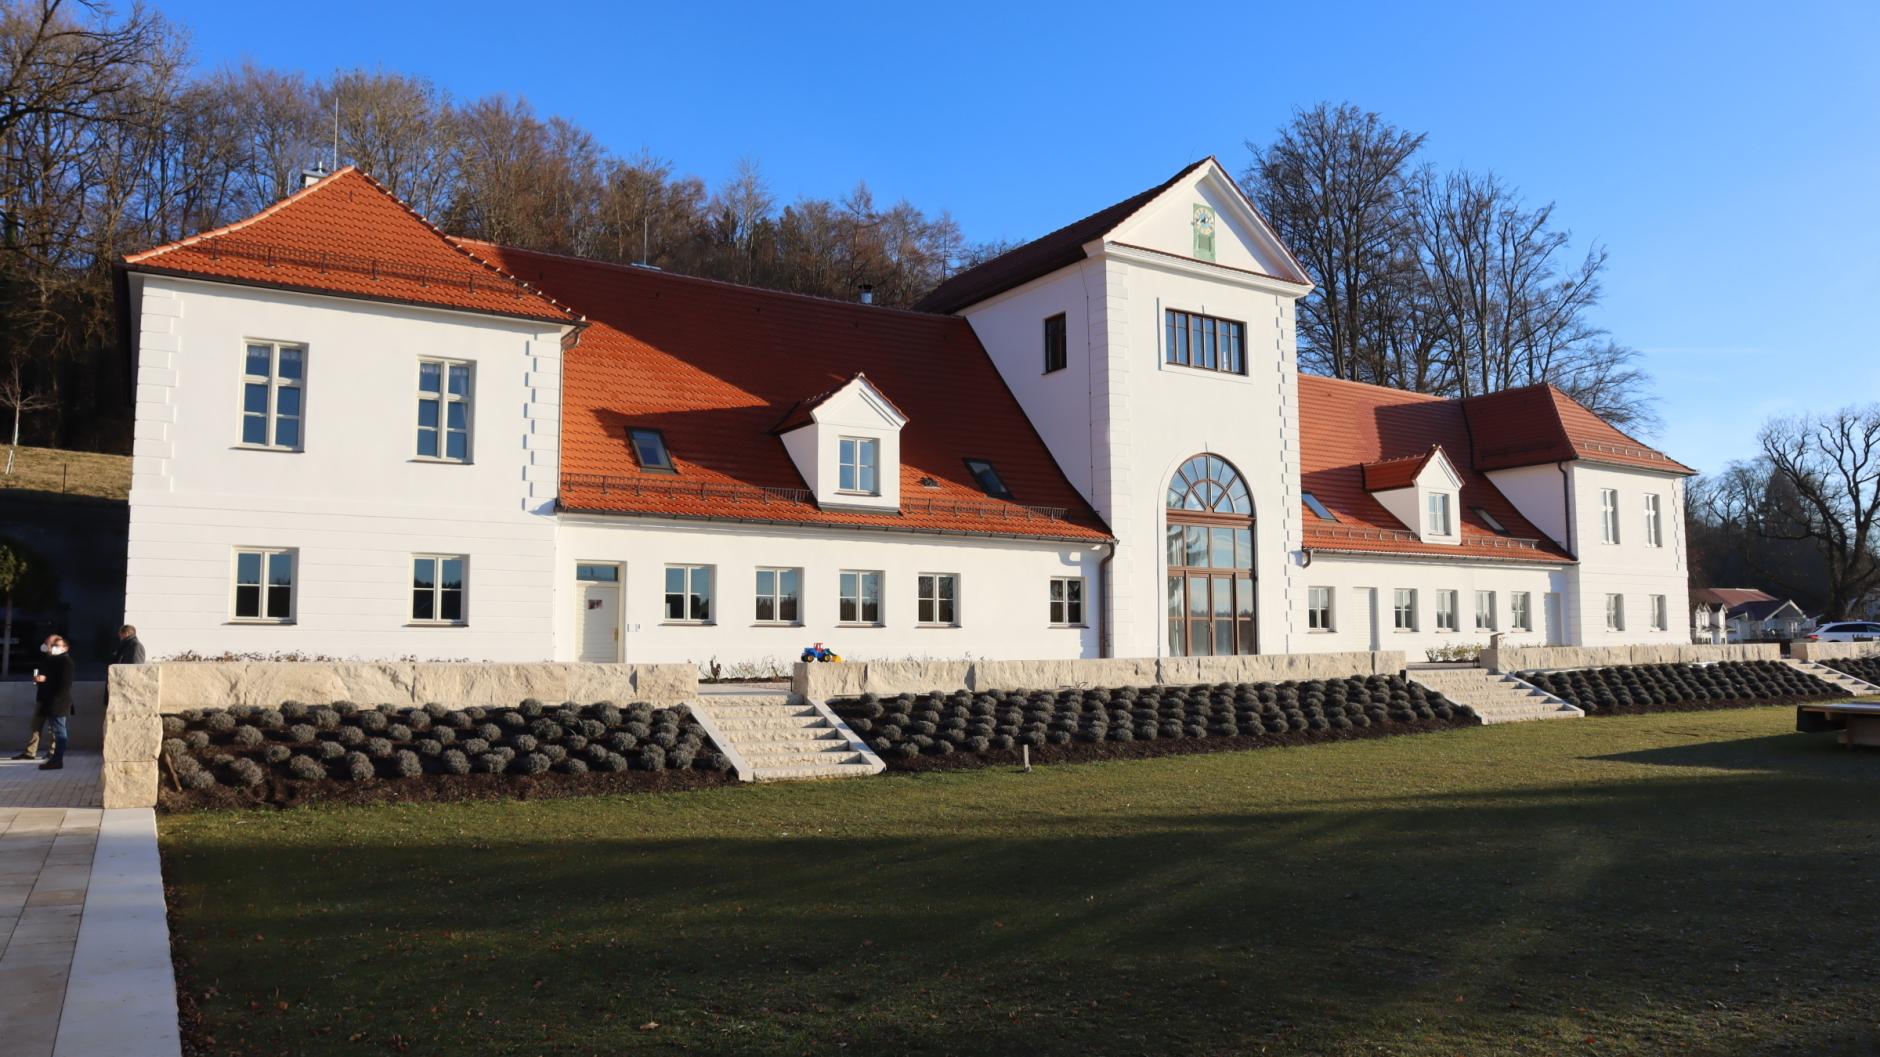 Aystetten: Aystettens Schloss Louisenruh gewinnt Denkmalpreis